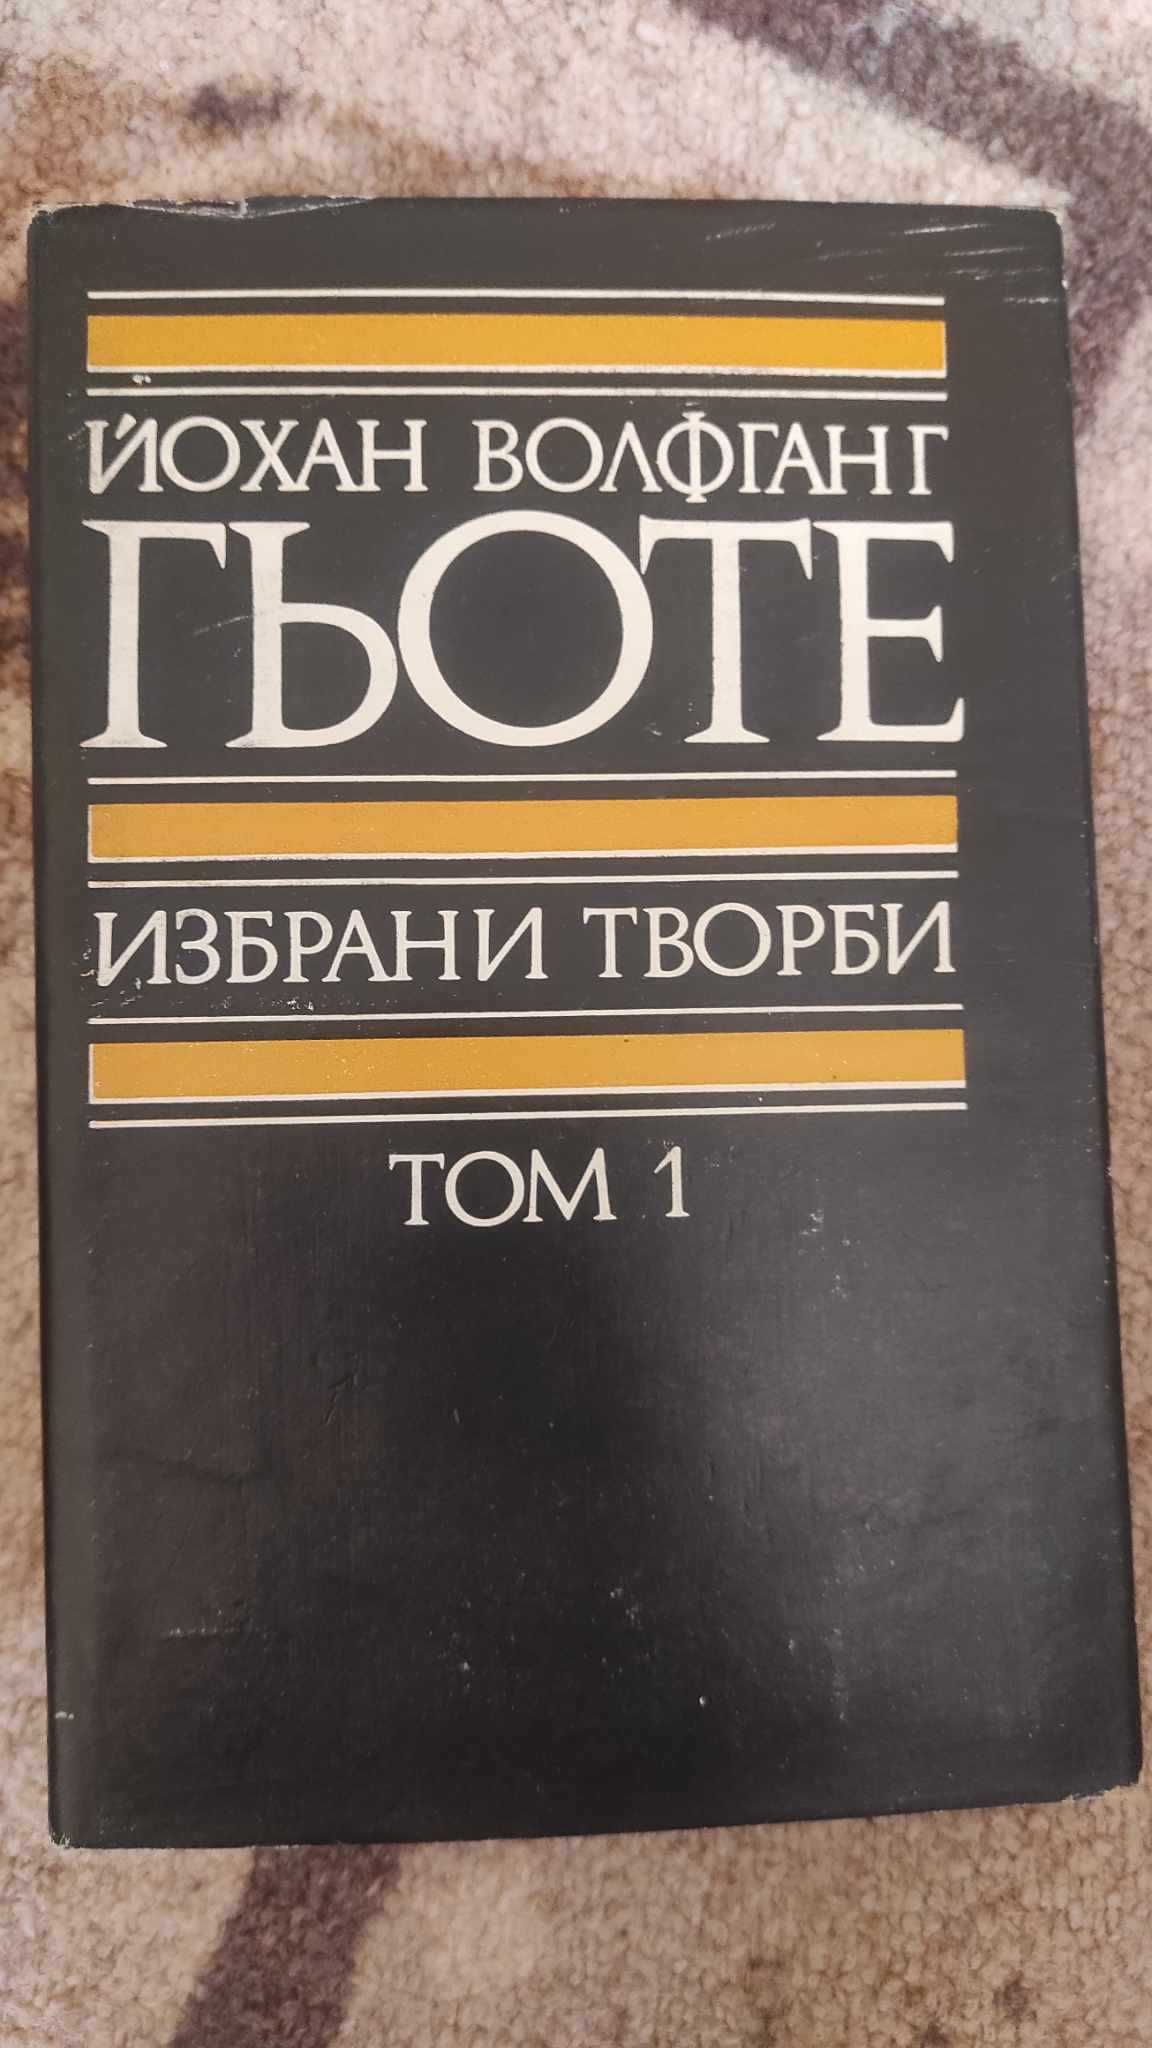 Колекция 1-8 ТОМ книги Йохан Волфганг Гьоте